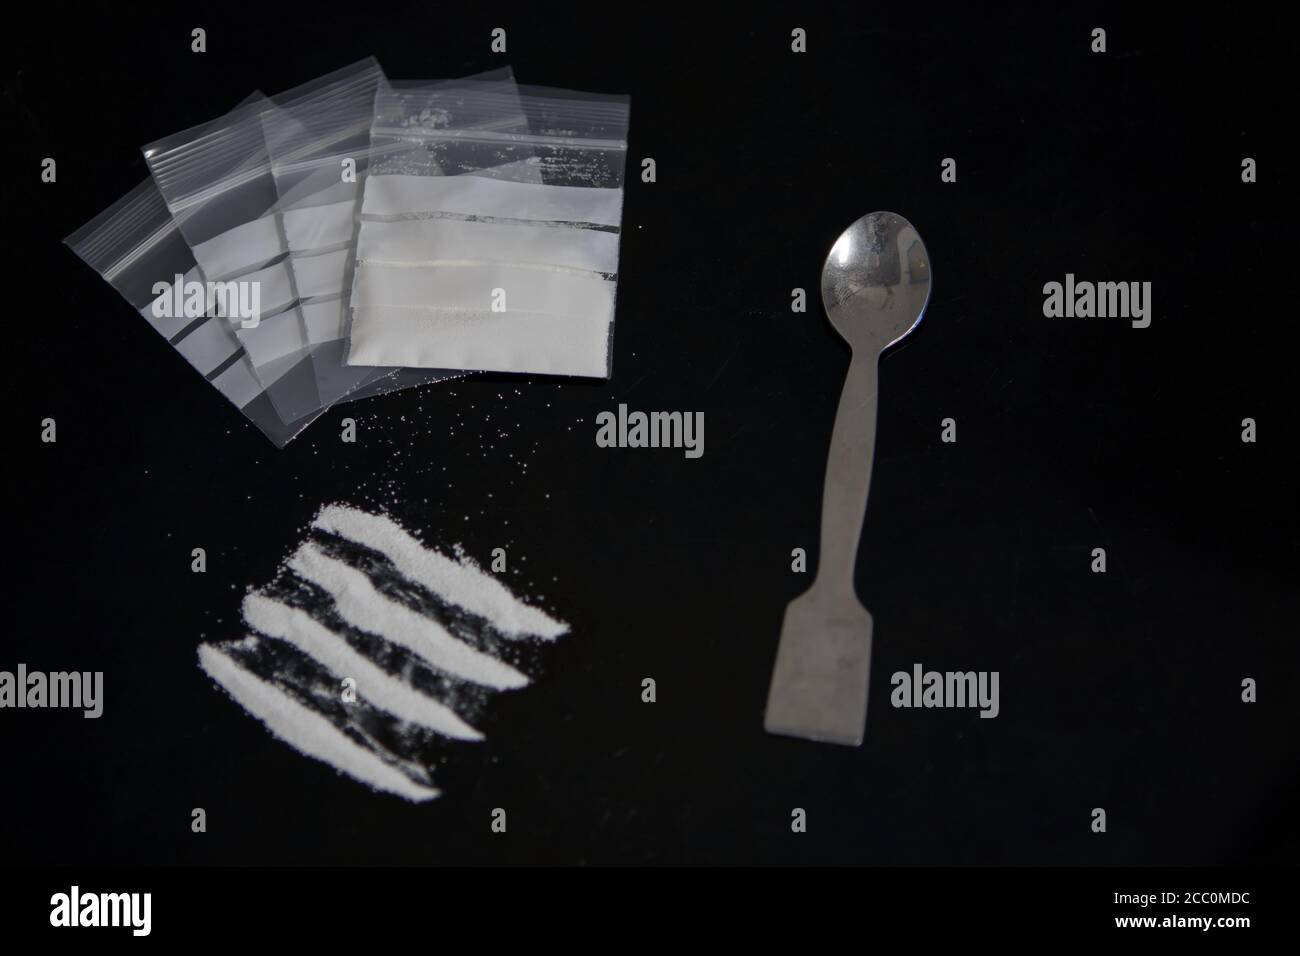 Cocaína en polvo y drogas en bolsas de plástico sobre superficie de vidrio negro. Vista superior del concepto de adicción a las drogas Foto de stock